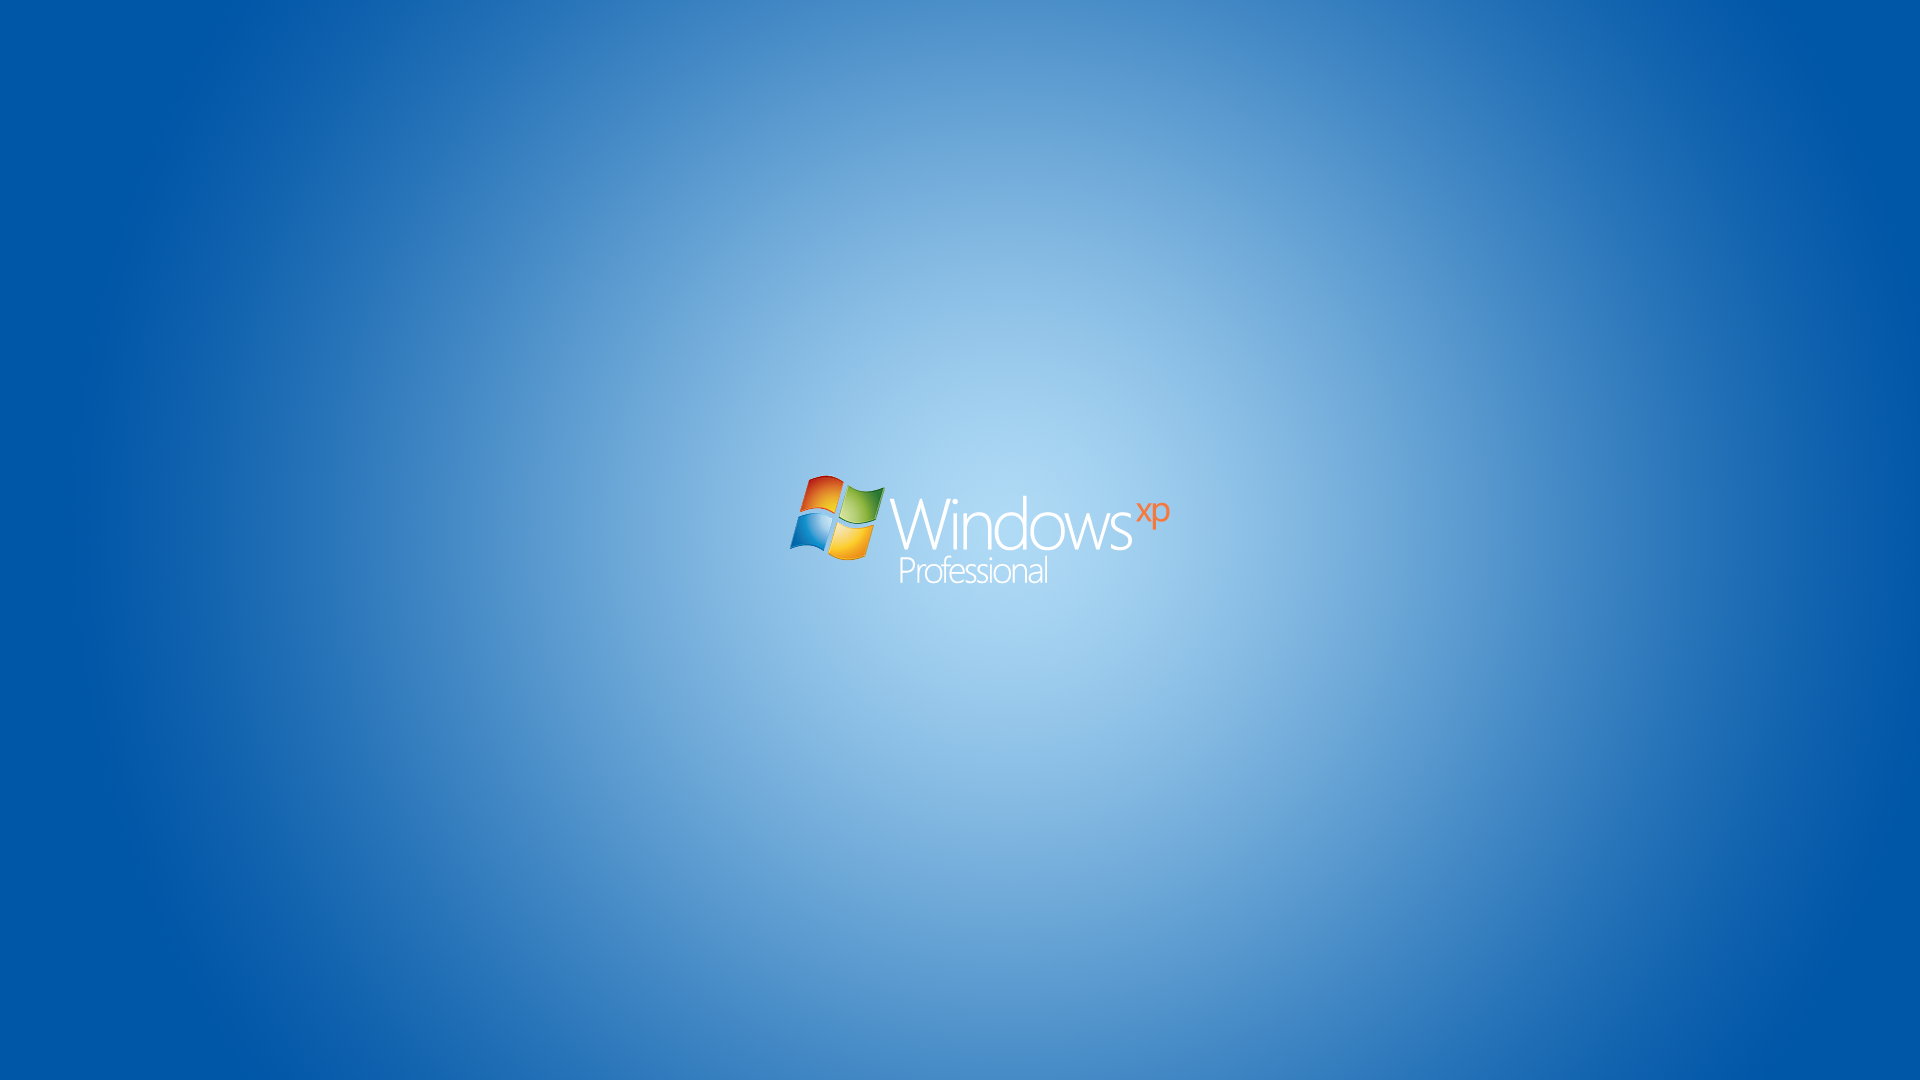 windowsxpwallpaper - DeviantArt